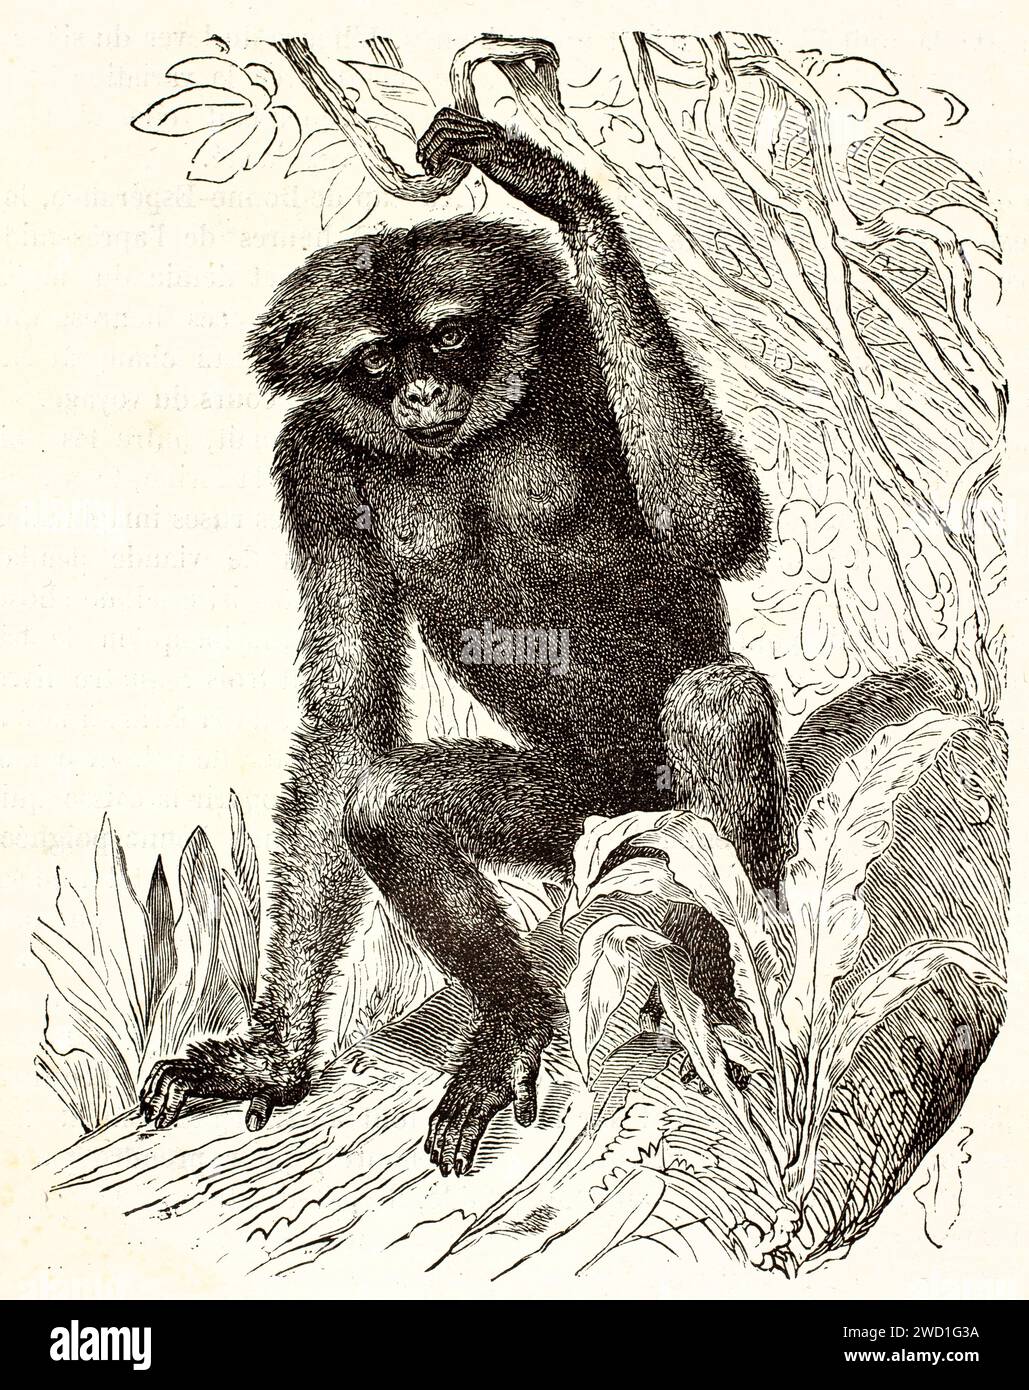 Alte gravierte Abbildung eines Gibbon. Kreted by Kertschmer, veröffentlicht auf Brehm, Les Mammifers, Baillière et fils, Paris, 1878 Stockfoto